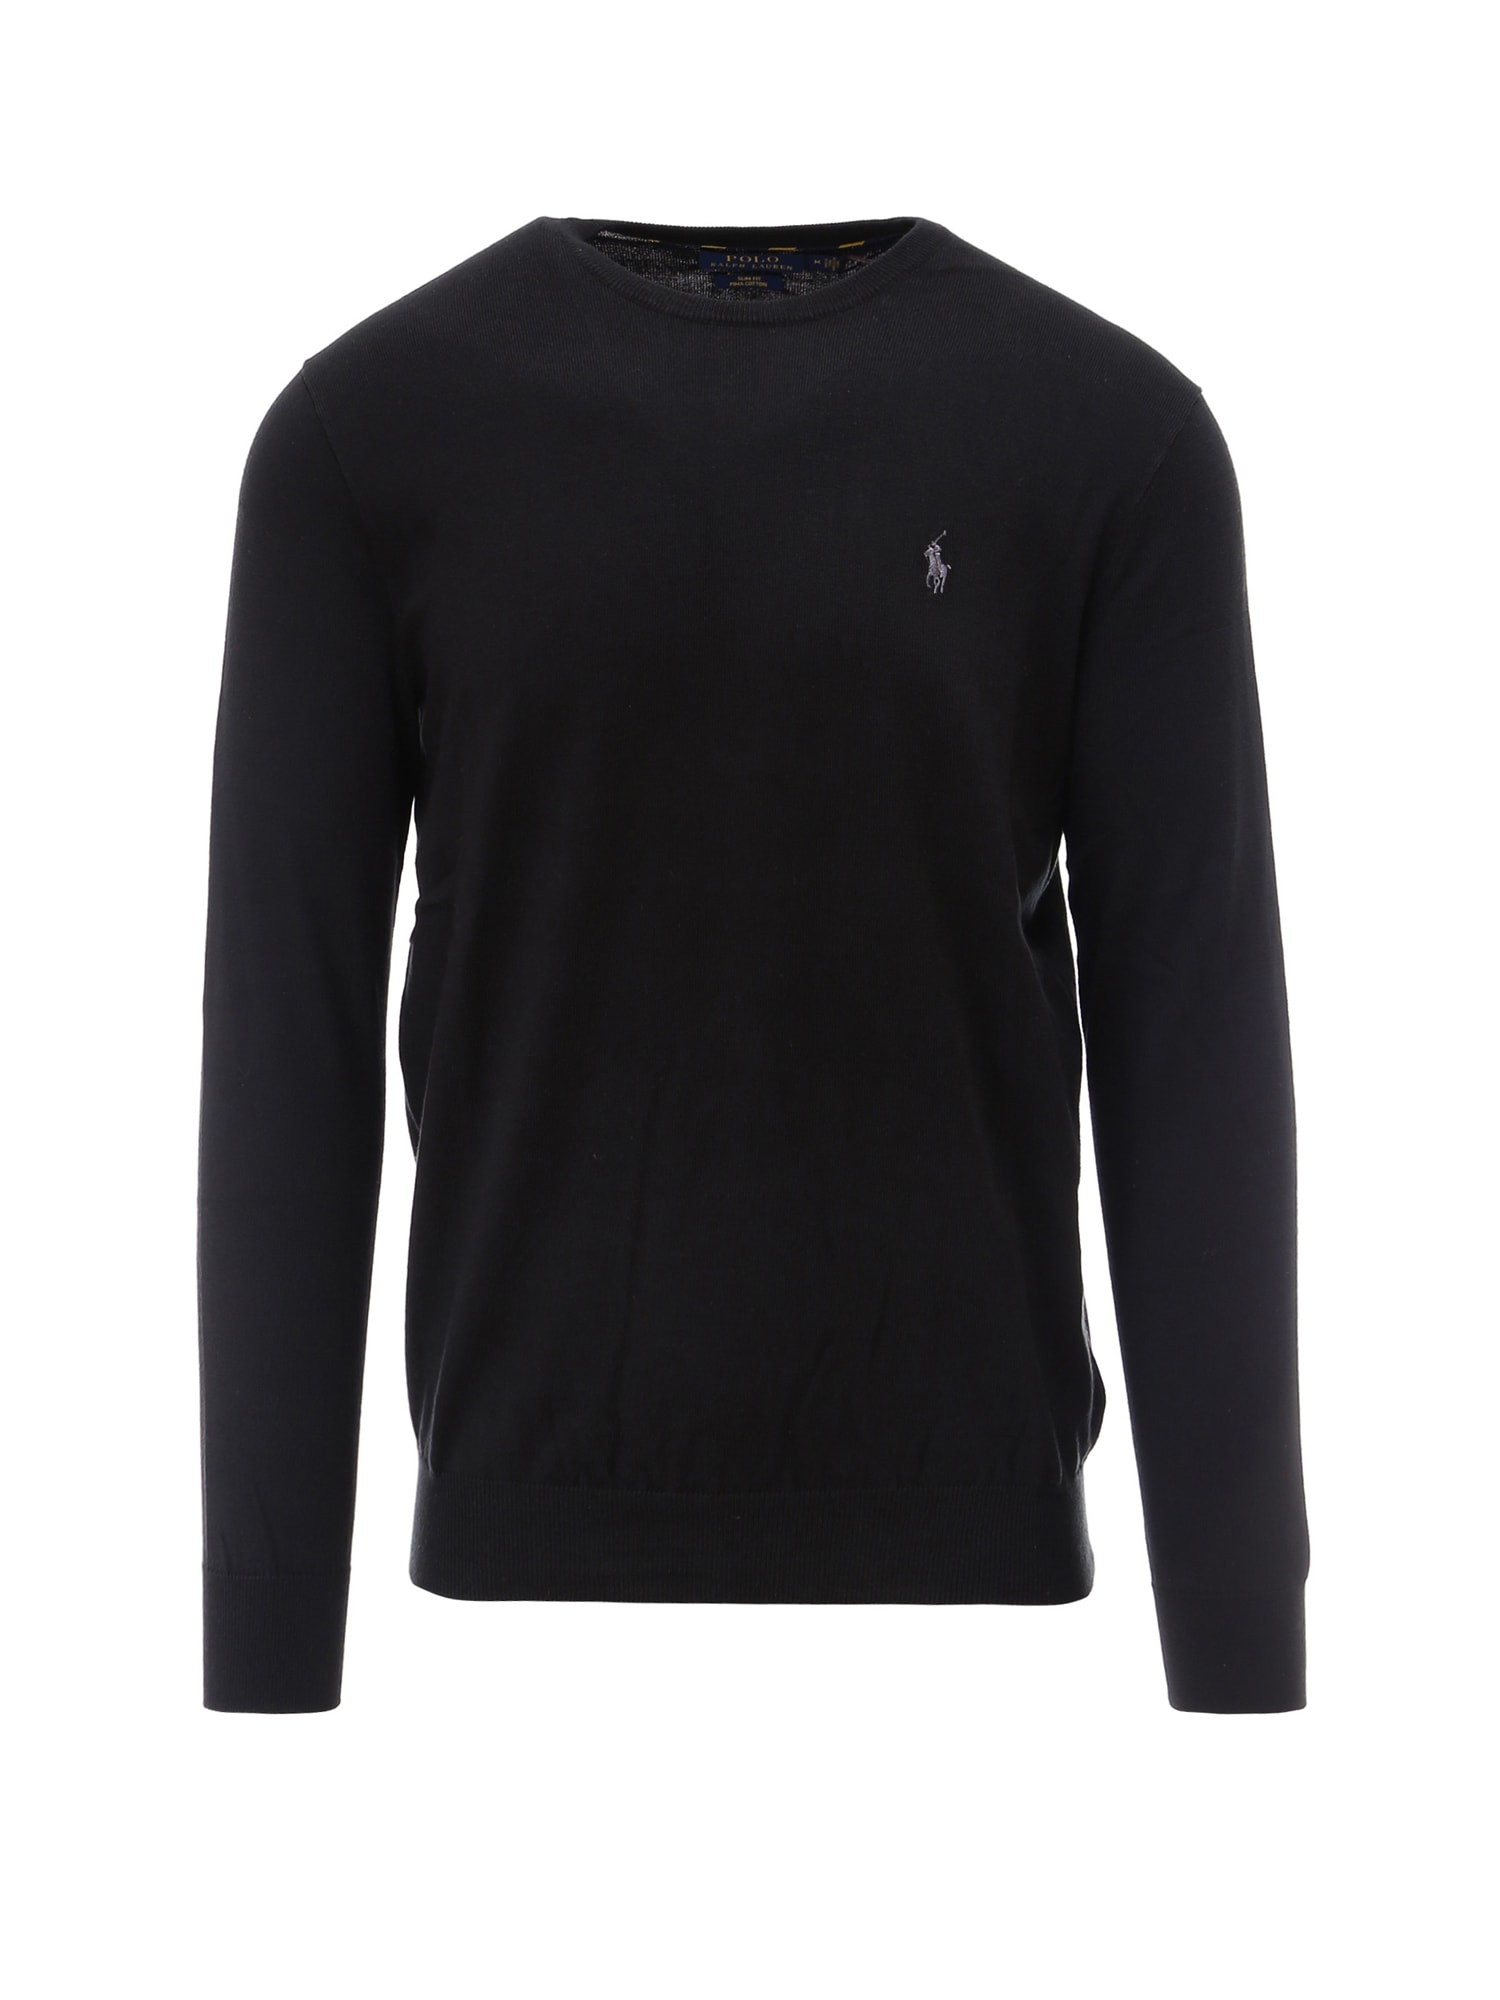 Ralph Lauren Sweater In Black